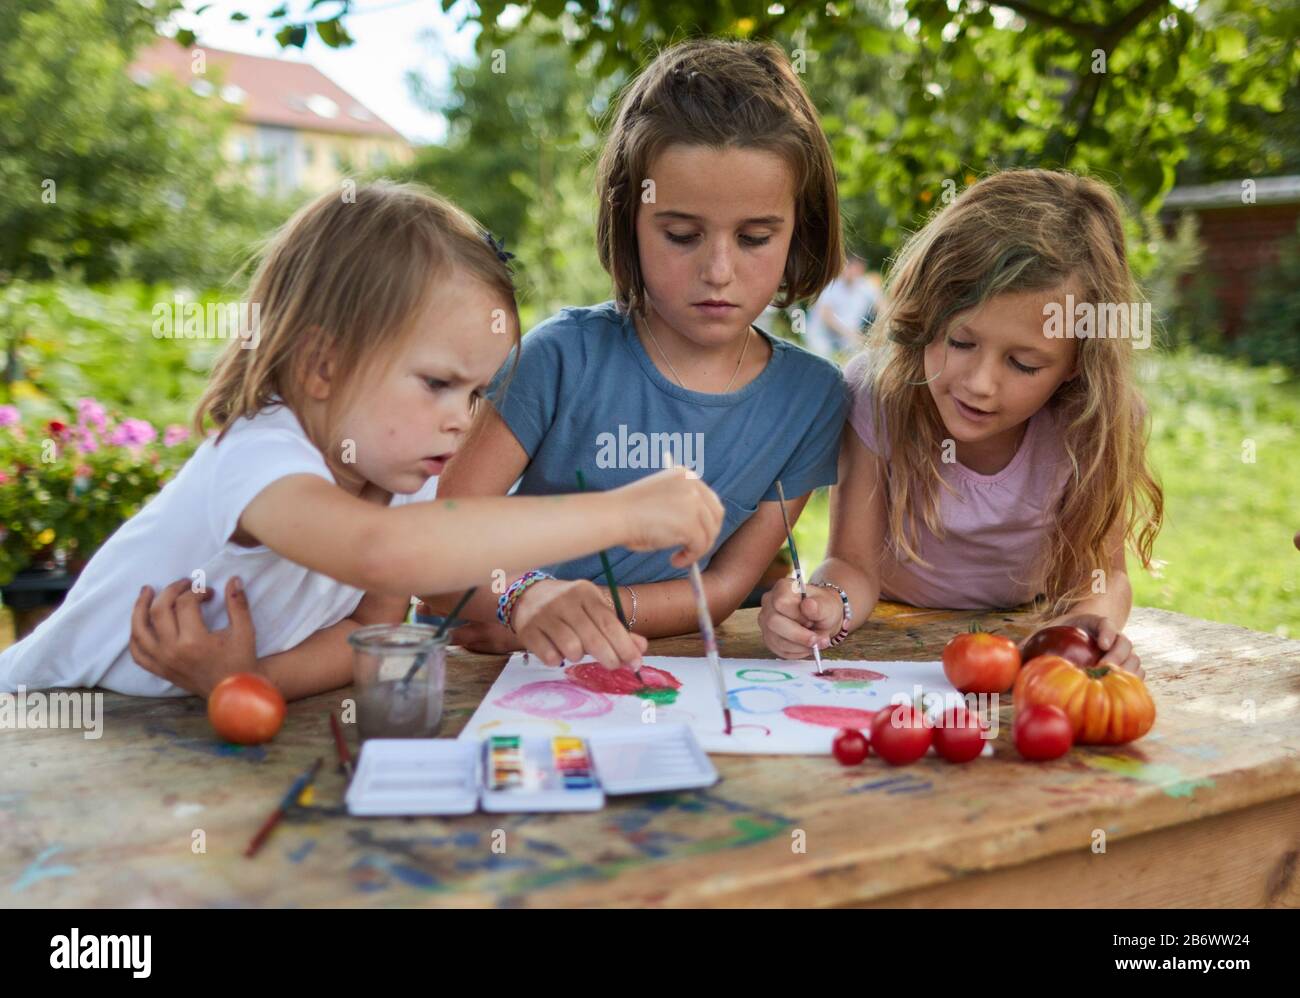 Enfants enquêtant sur la nourriture. Série: Peinture des légumes, dans ce cas des pommes de terre. Apprentissage selon le principe de la pédagogie Reggio, compréhension et découverte ludiques. Allemagne. Banque D'Images